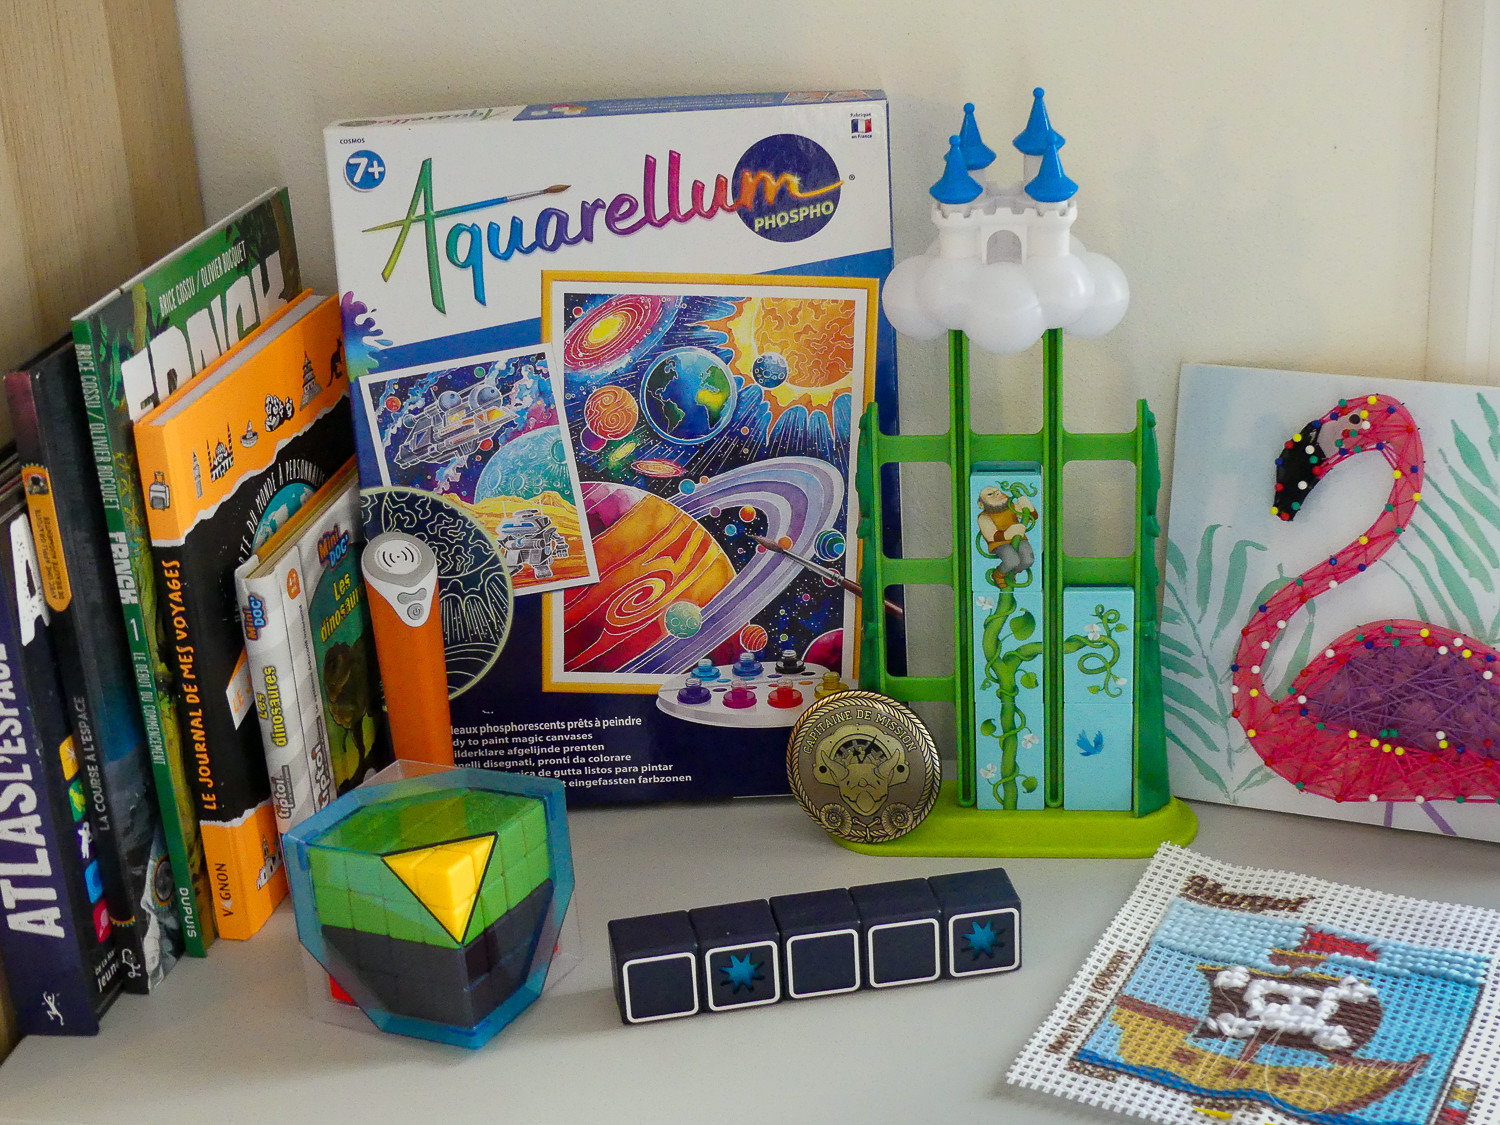 En panne d’idées cadeaux pour un enfant de 6, 7 ou 8 ans ? Voici une petite sélection d'idées de jeux, activités ou livres que nous aimons beaucoup ici. #cadeaux #enfants #ideescadeaux #idees #noel #anniversaire #6ans #7ans #8ans